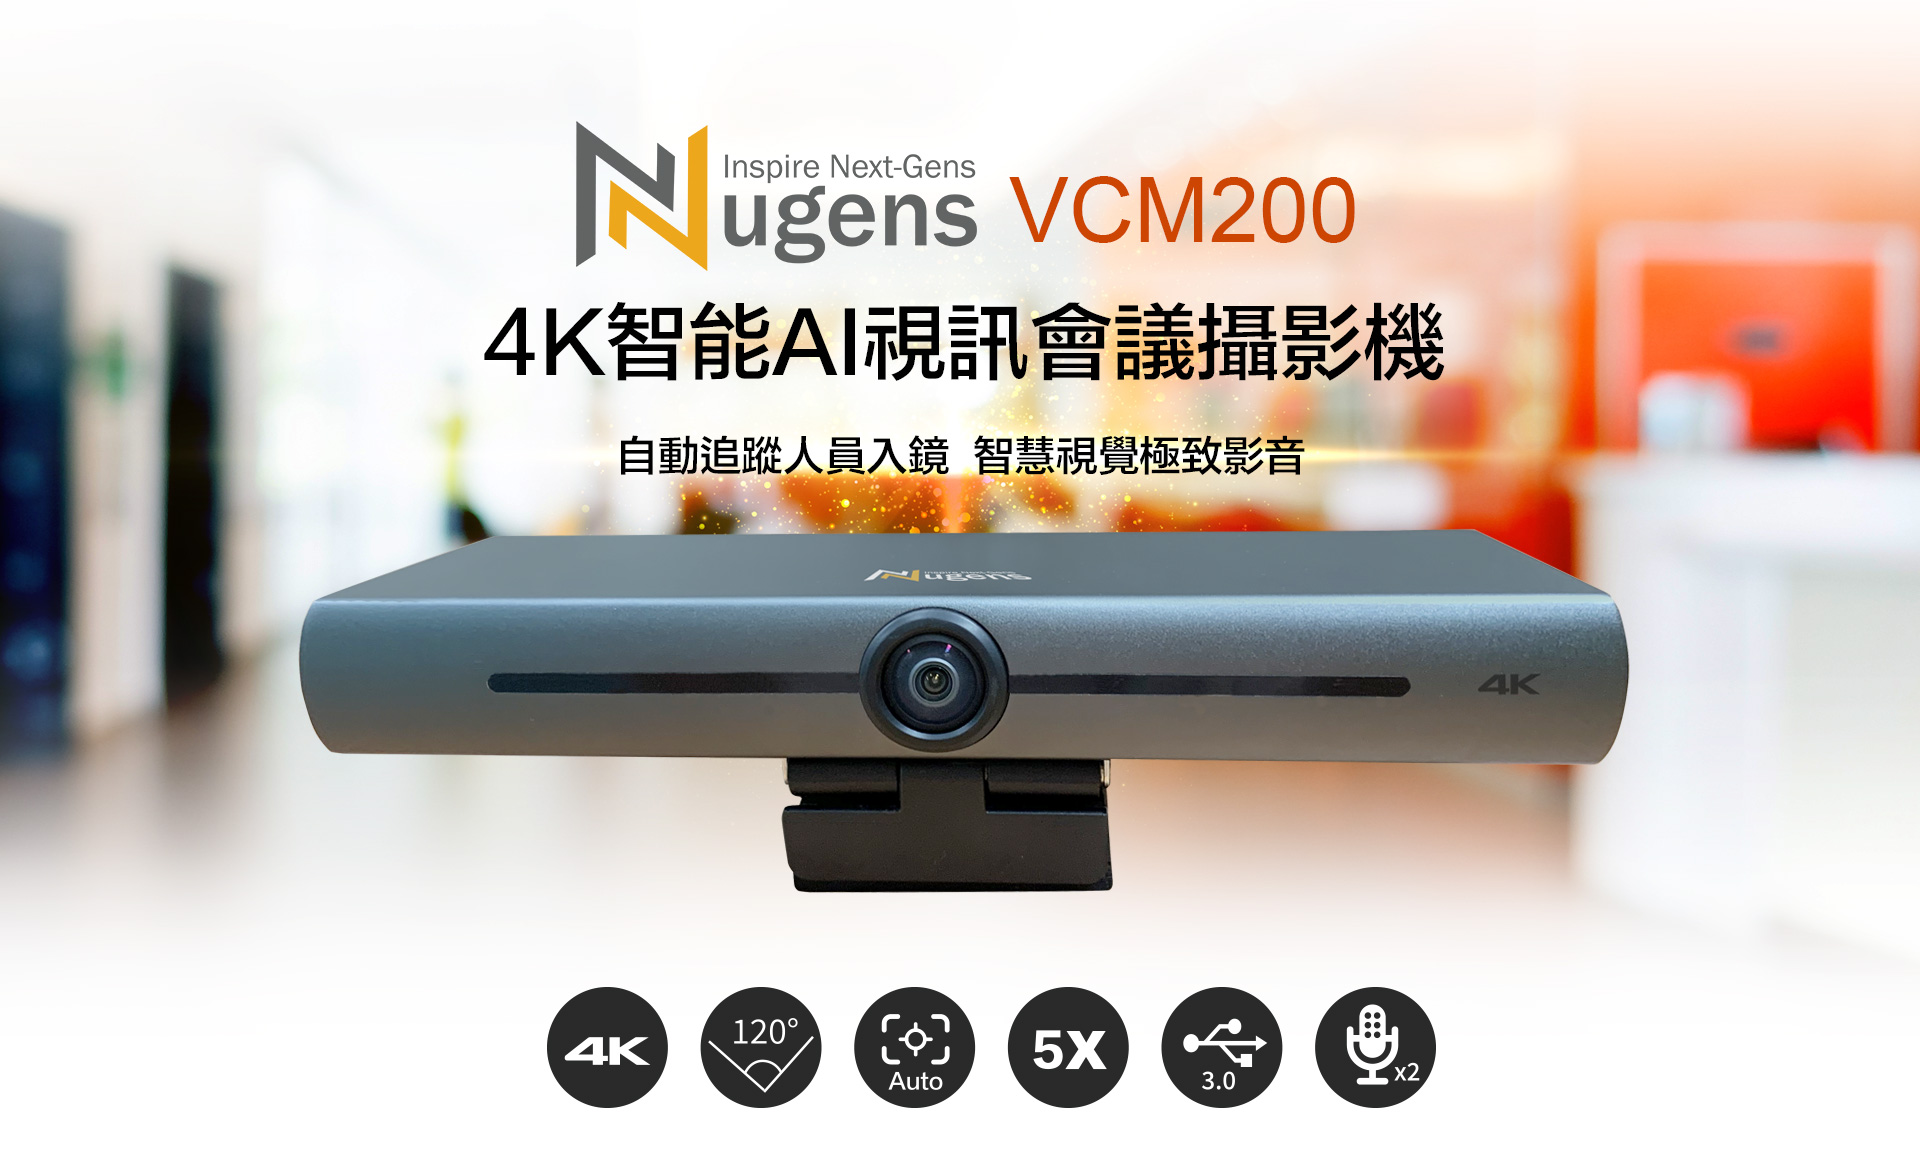 VCM200 4K智能AI視訊會議攝影機